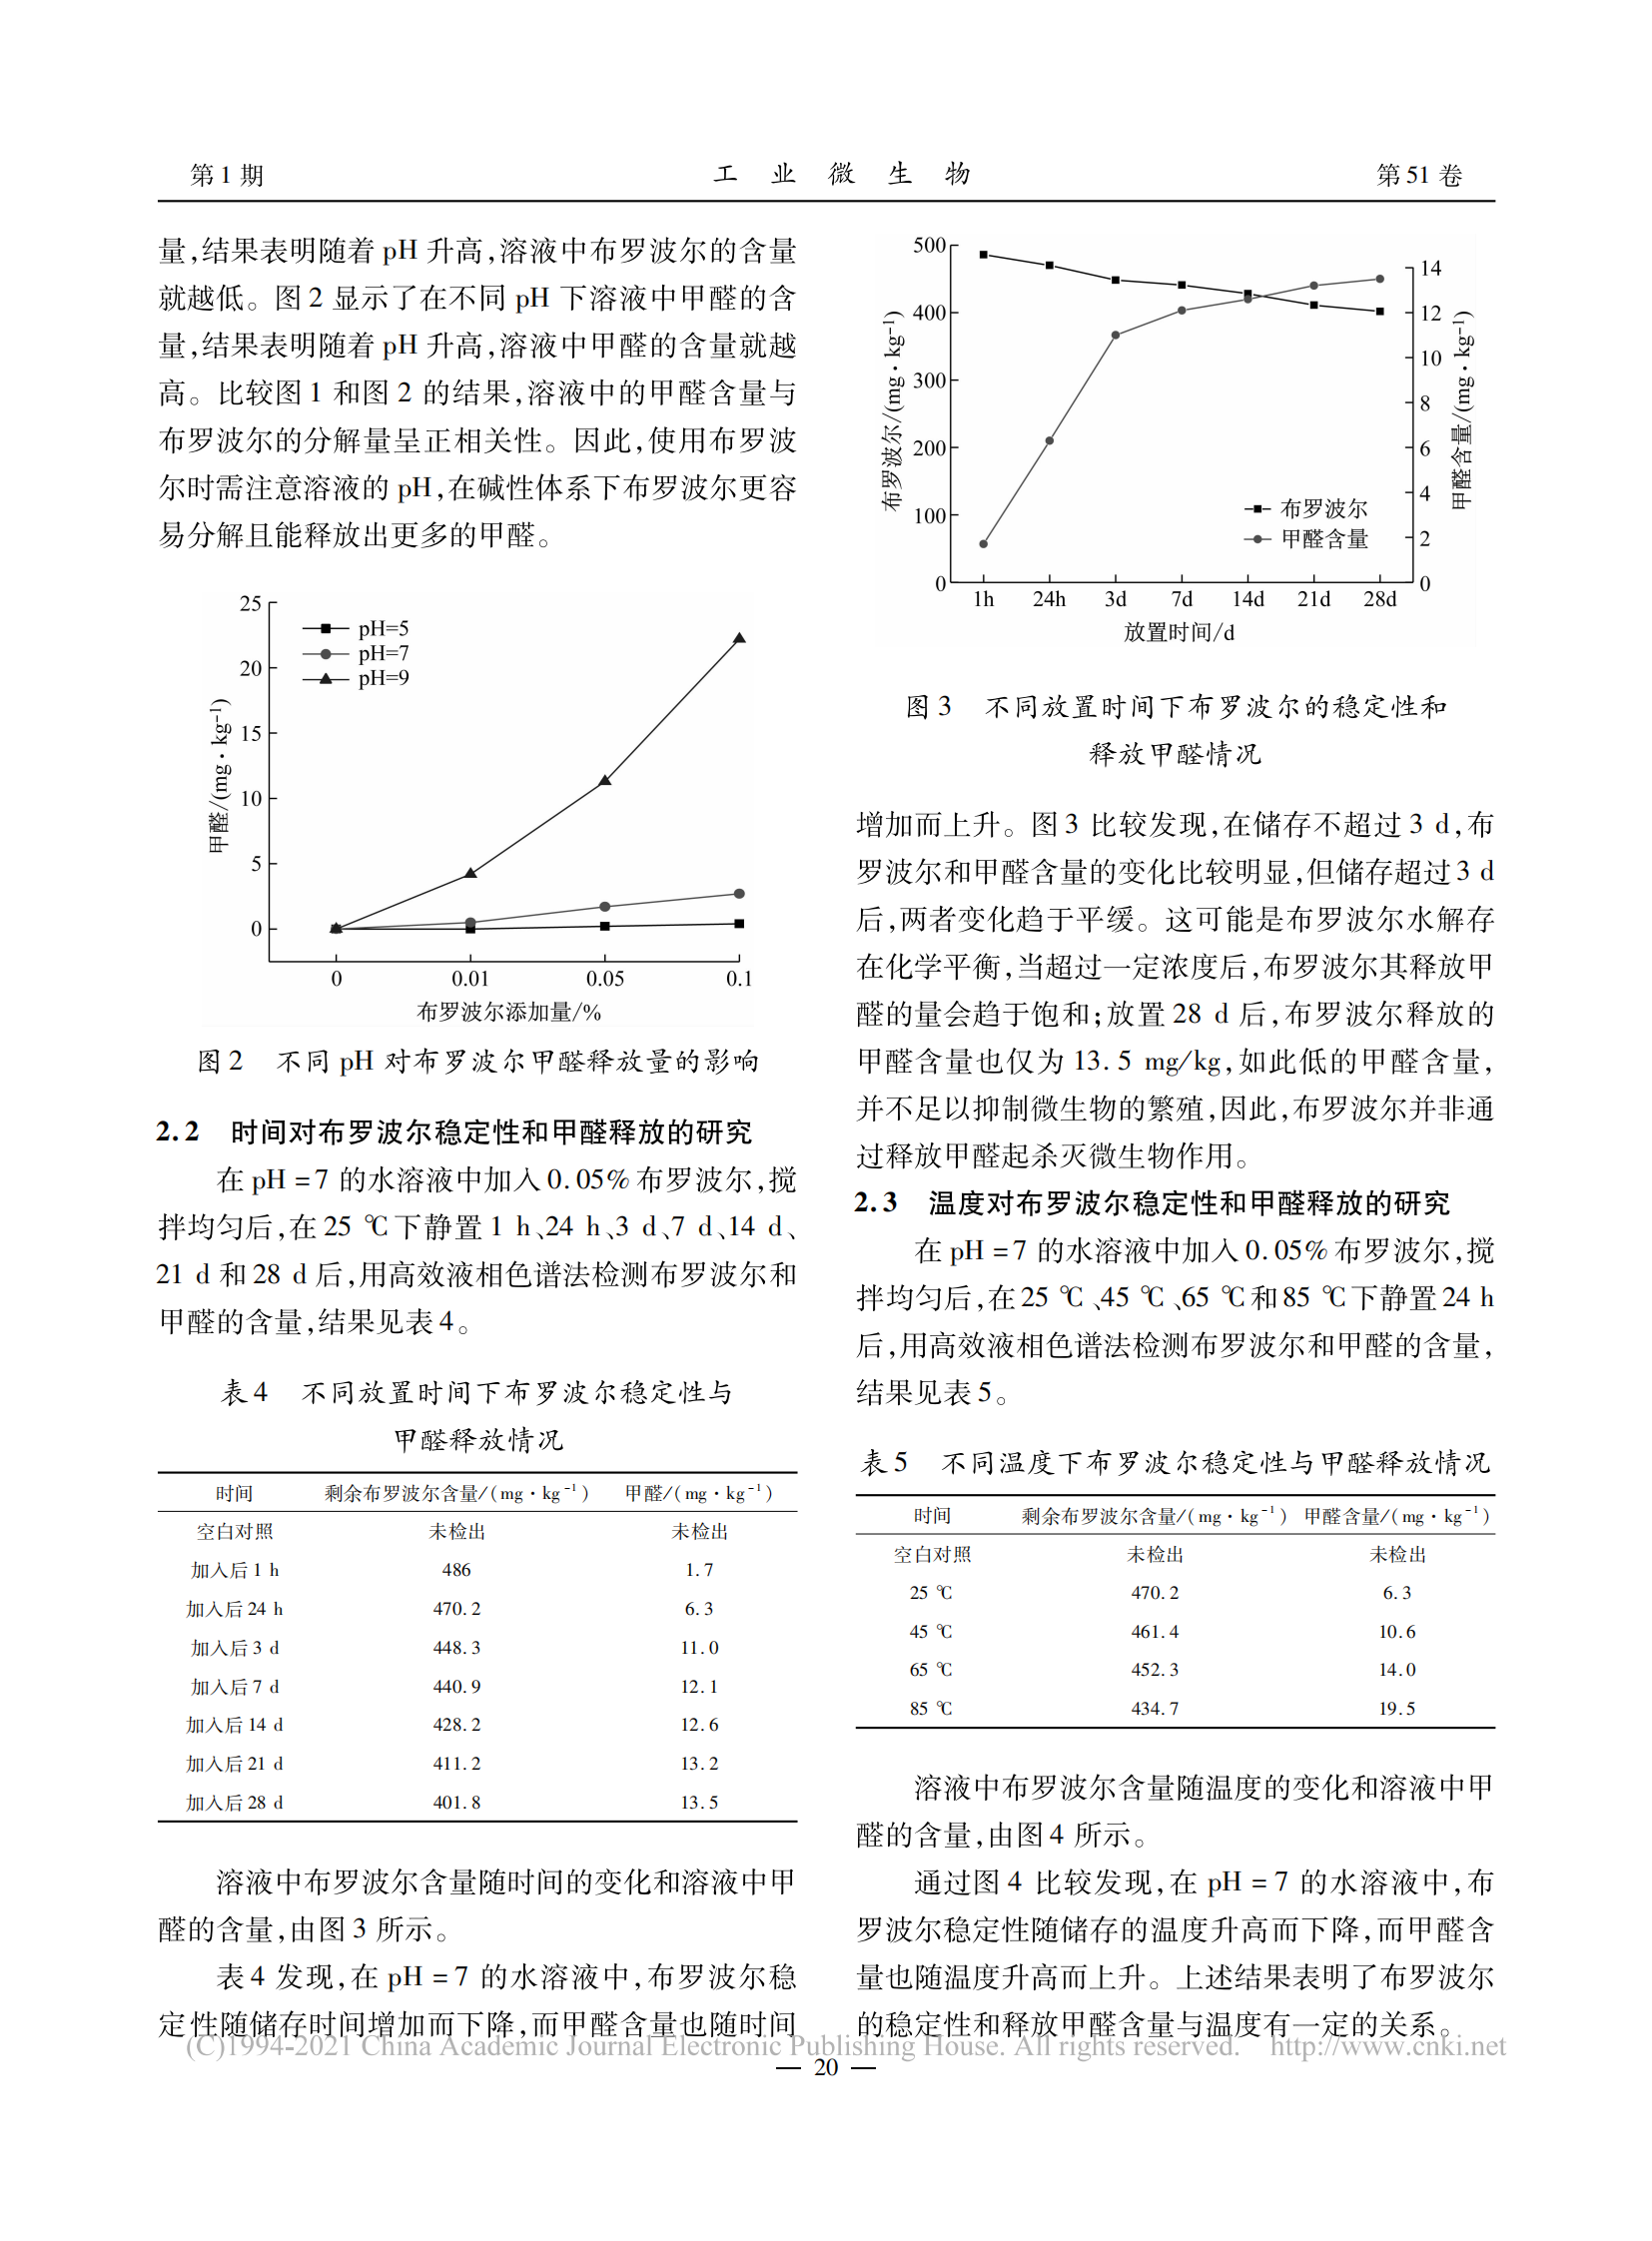 化妆品防腐剂布罗波尔的稳定性及其释放甲醛的研究_刘永龙_02.png